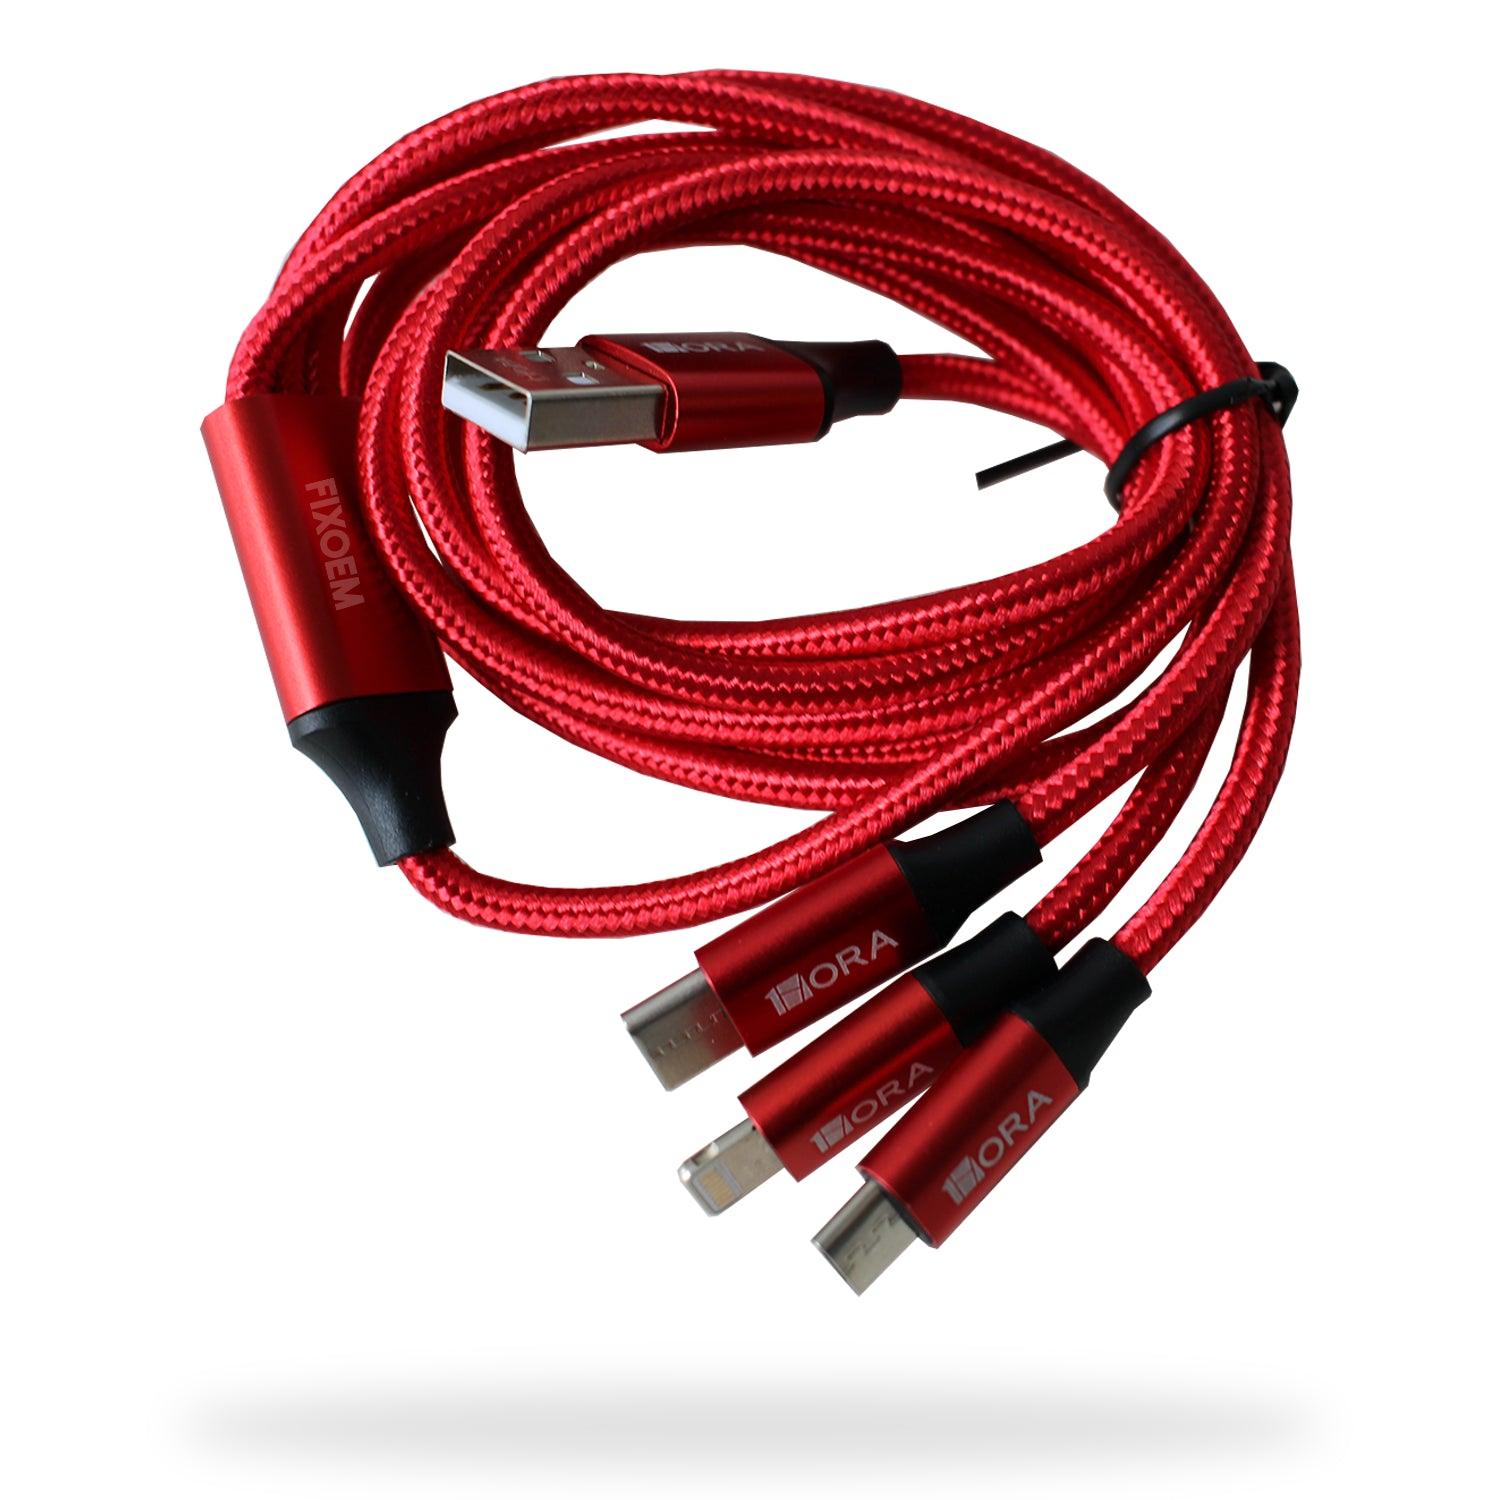 Cable Usb 3En1 Lighting + Tipo C + V8 1Hr 2.1A a solo $ 70.00 Refaccion y puestos celulares, refurbish y microelectronica.- FixOEM